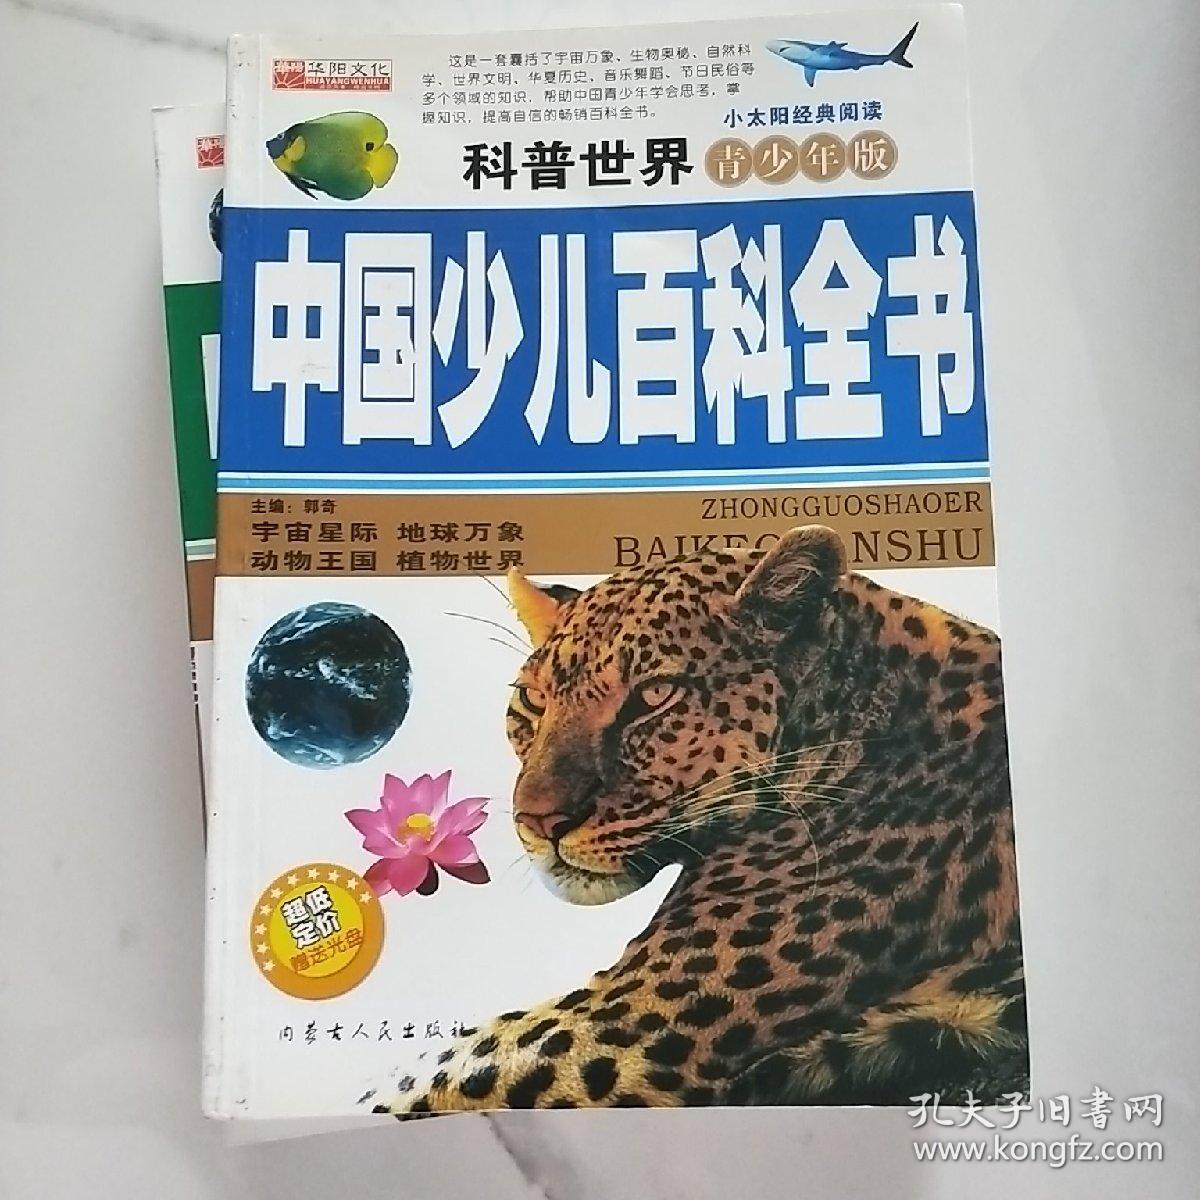 中国《少儿百科全书》。